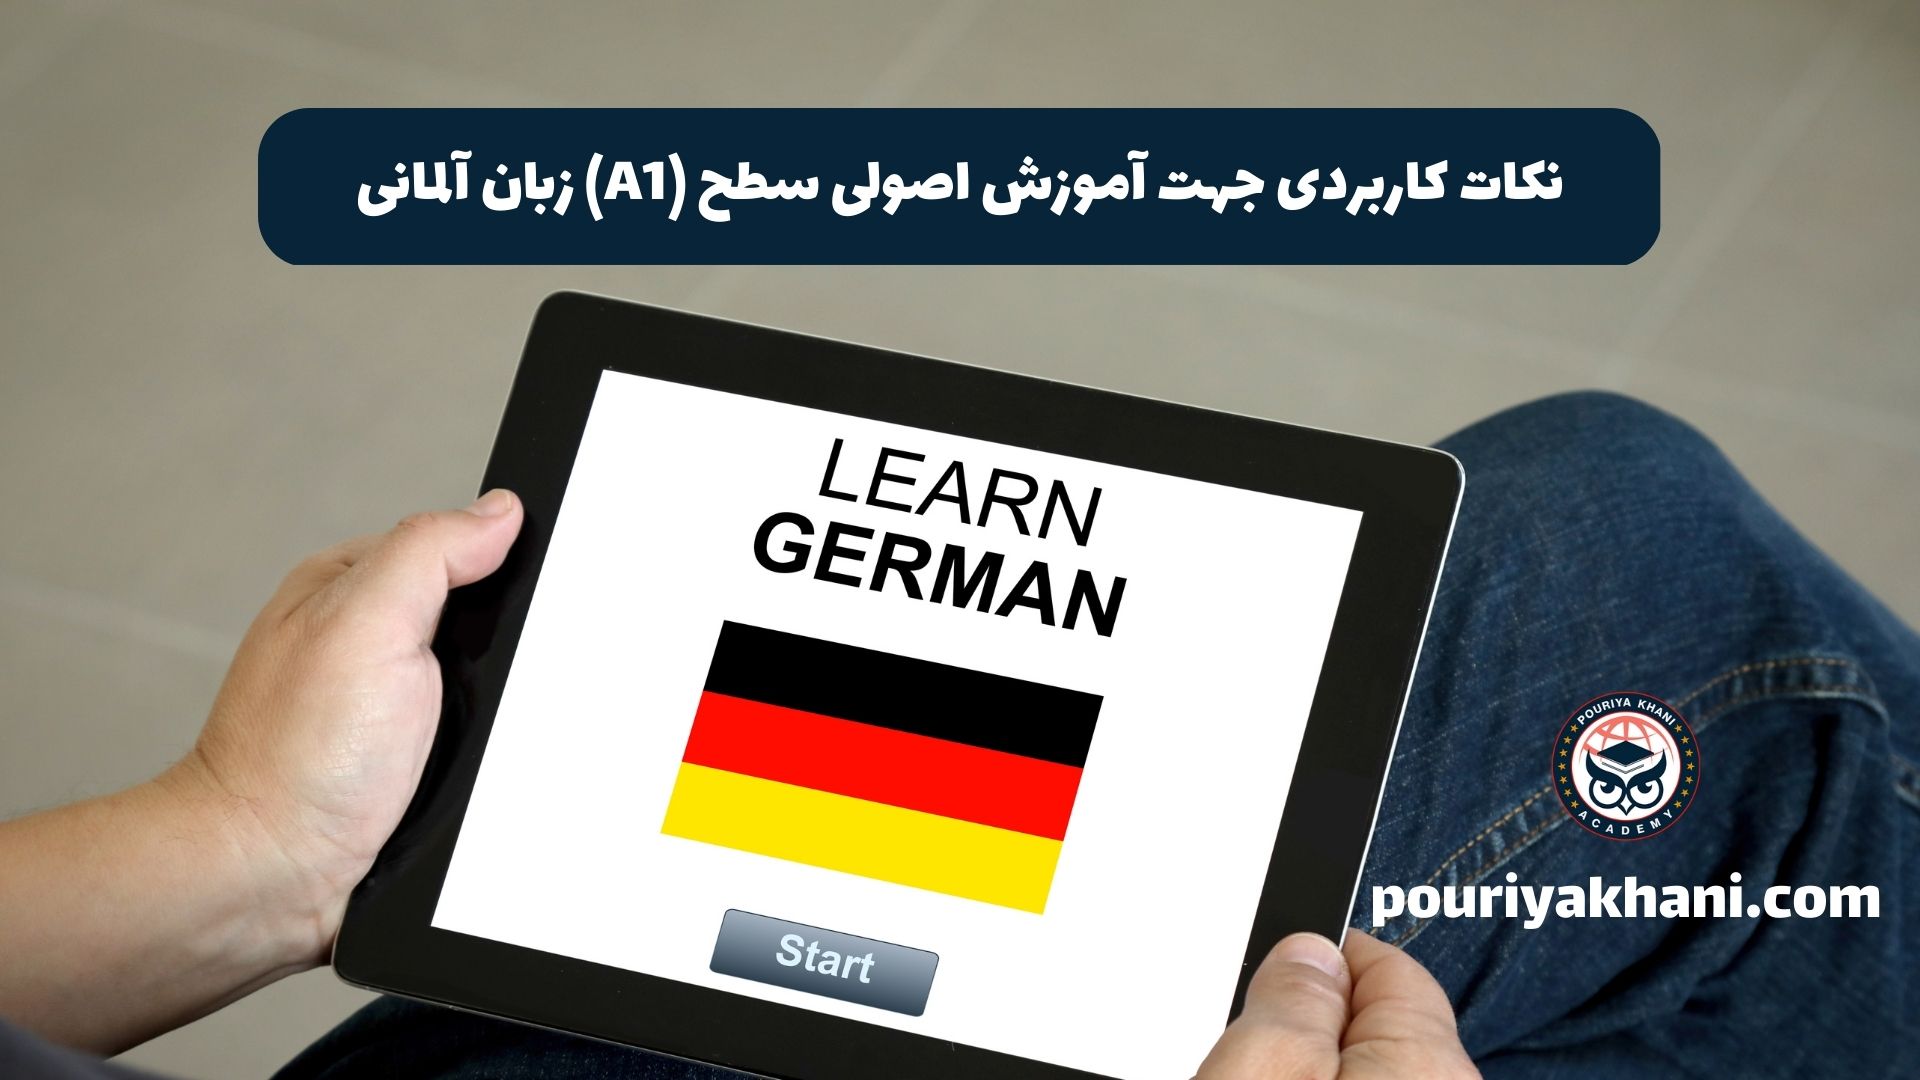 نکات کاربردی برای آموزش اصولی سطح A1 زبان آلمانی